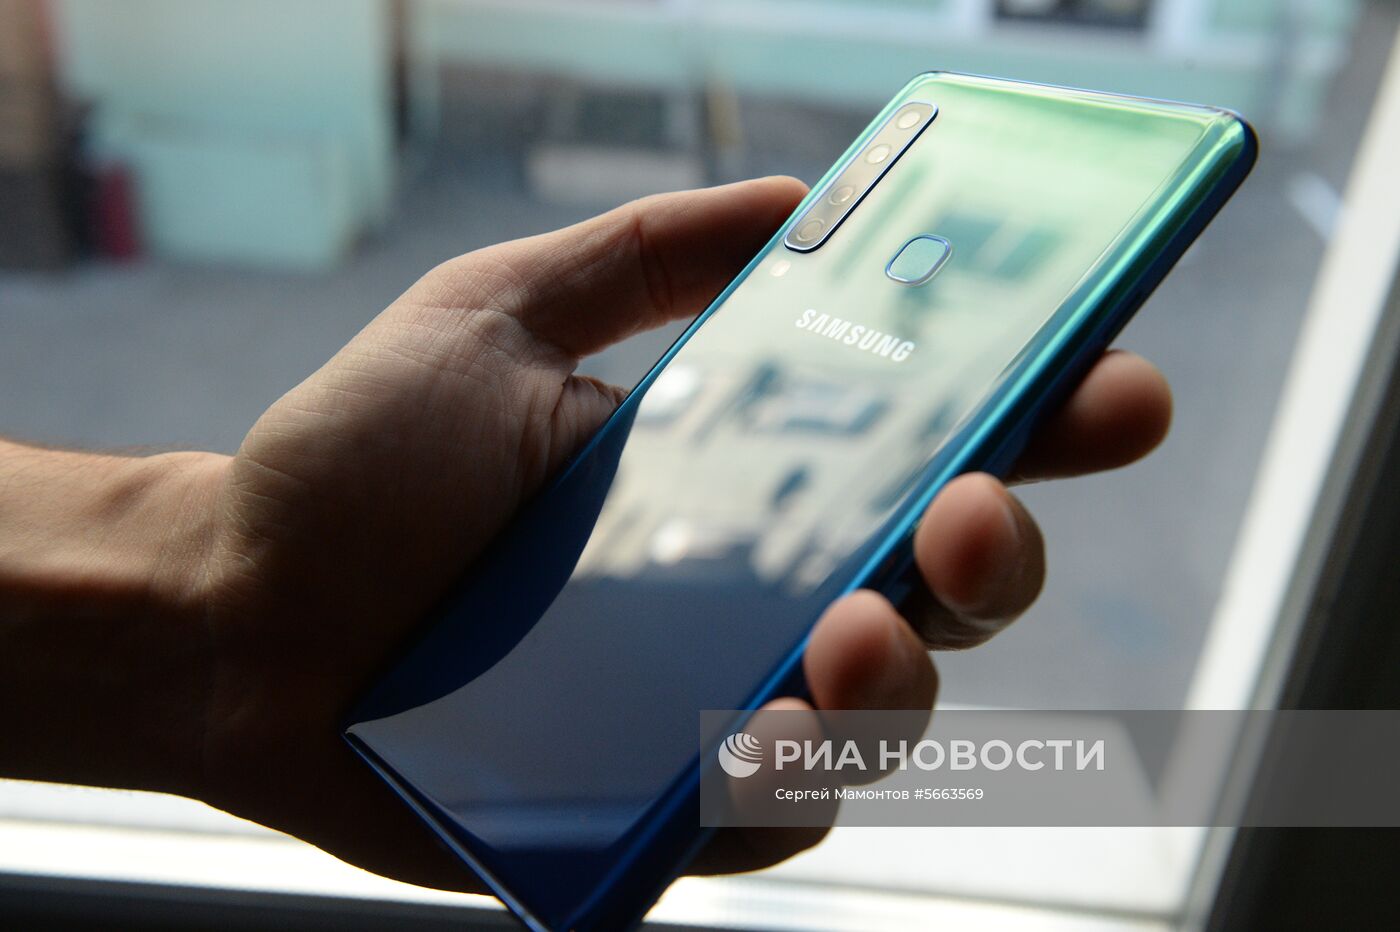 Презентация новых устройств компании Samsung